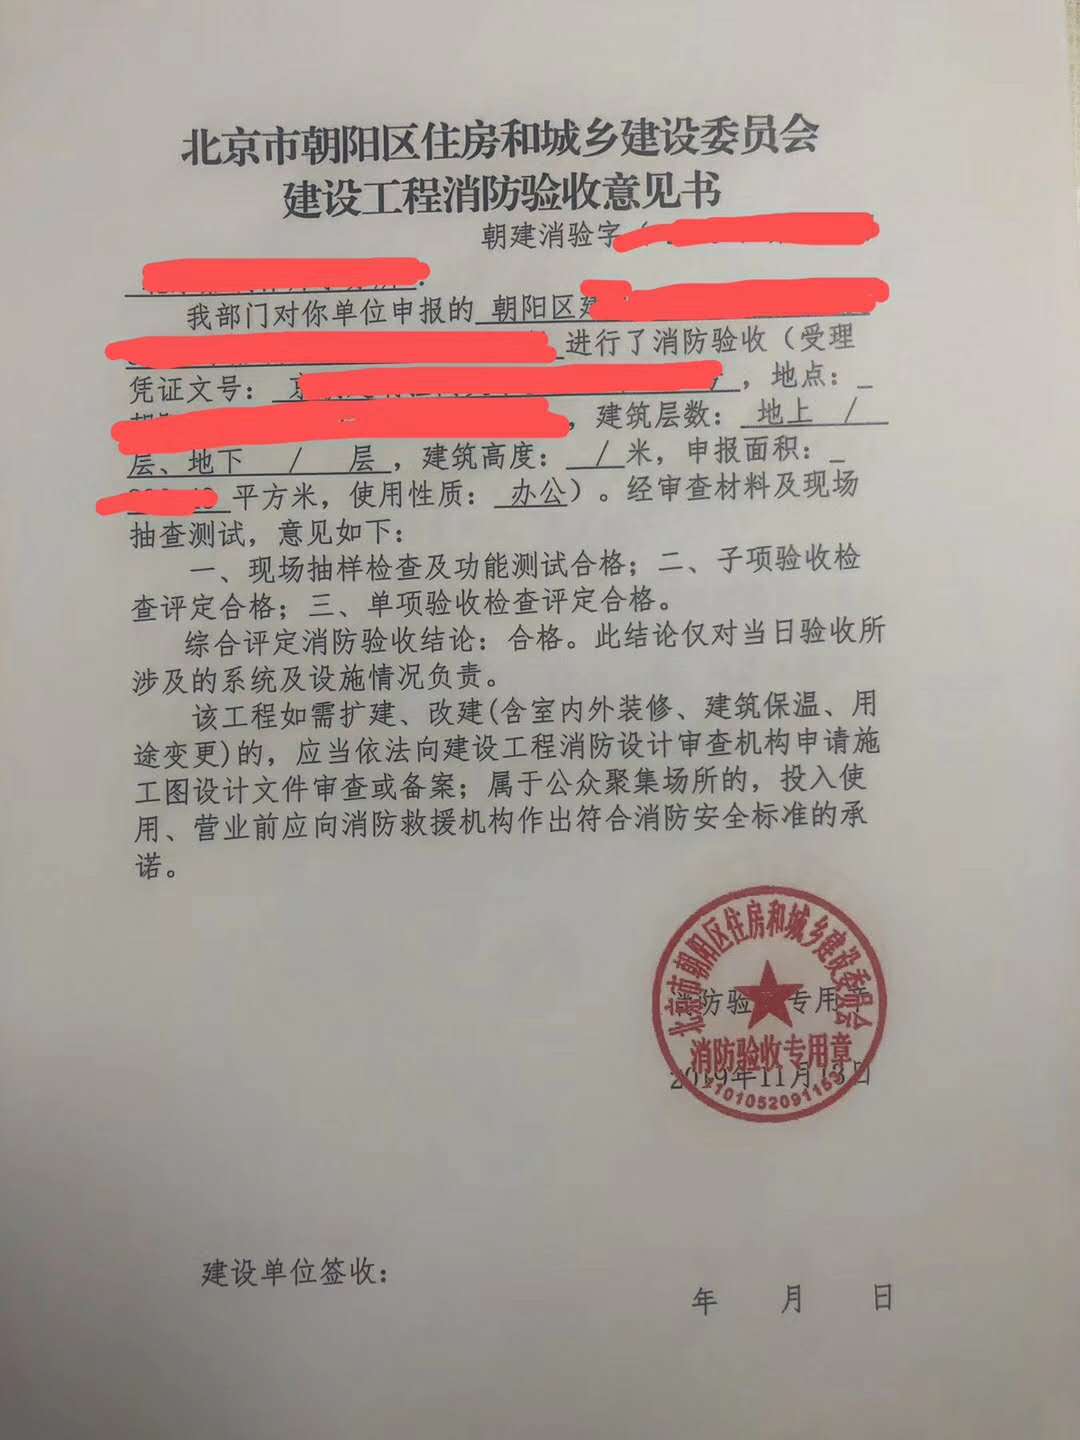 房山区旅店消防报审流程 北京市设计出图消防报审